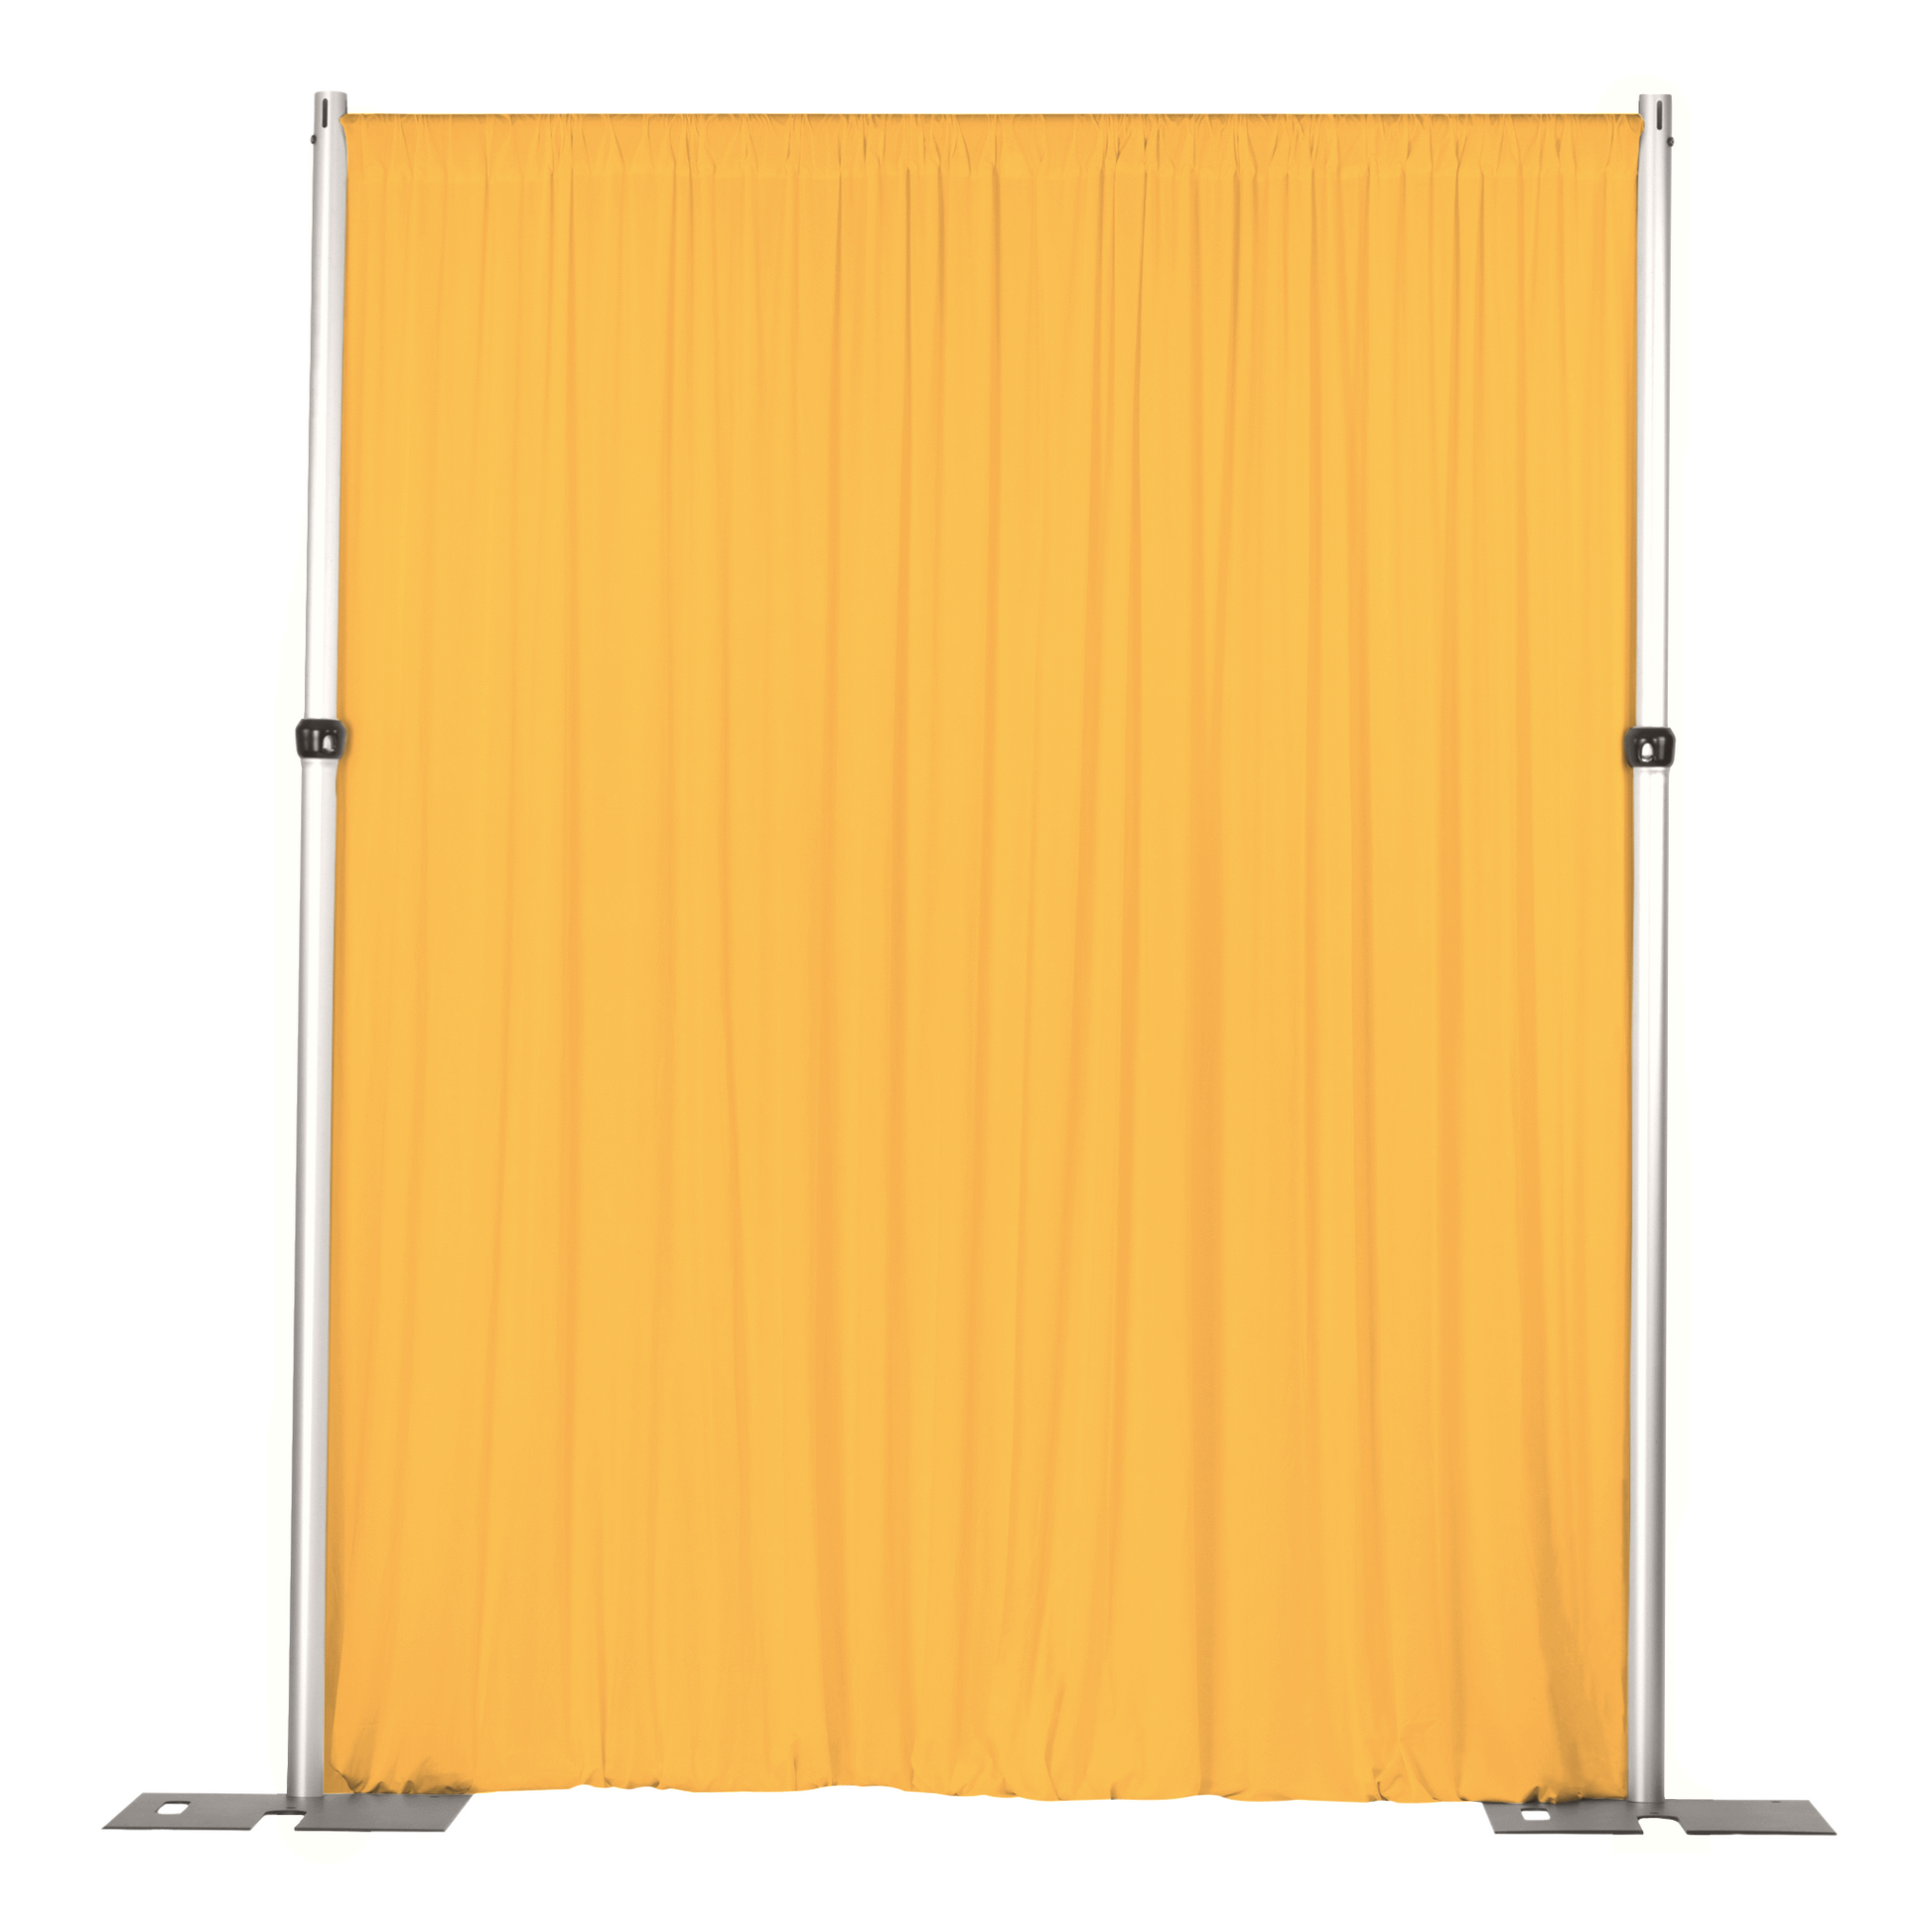 Spandex 4-way Stretch Drape Curtain 14ft H x 60" W - Canary Yellow